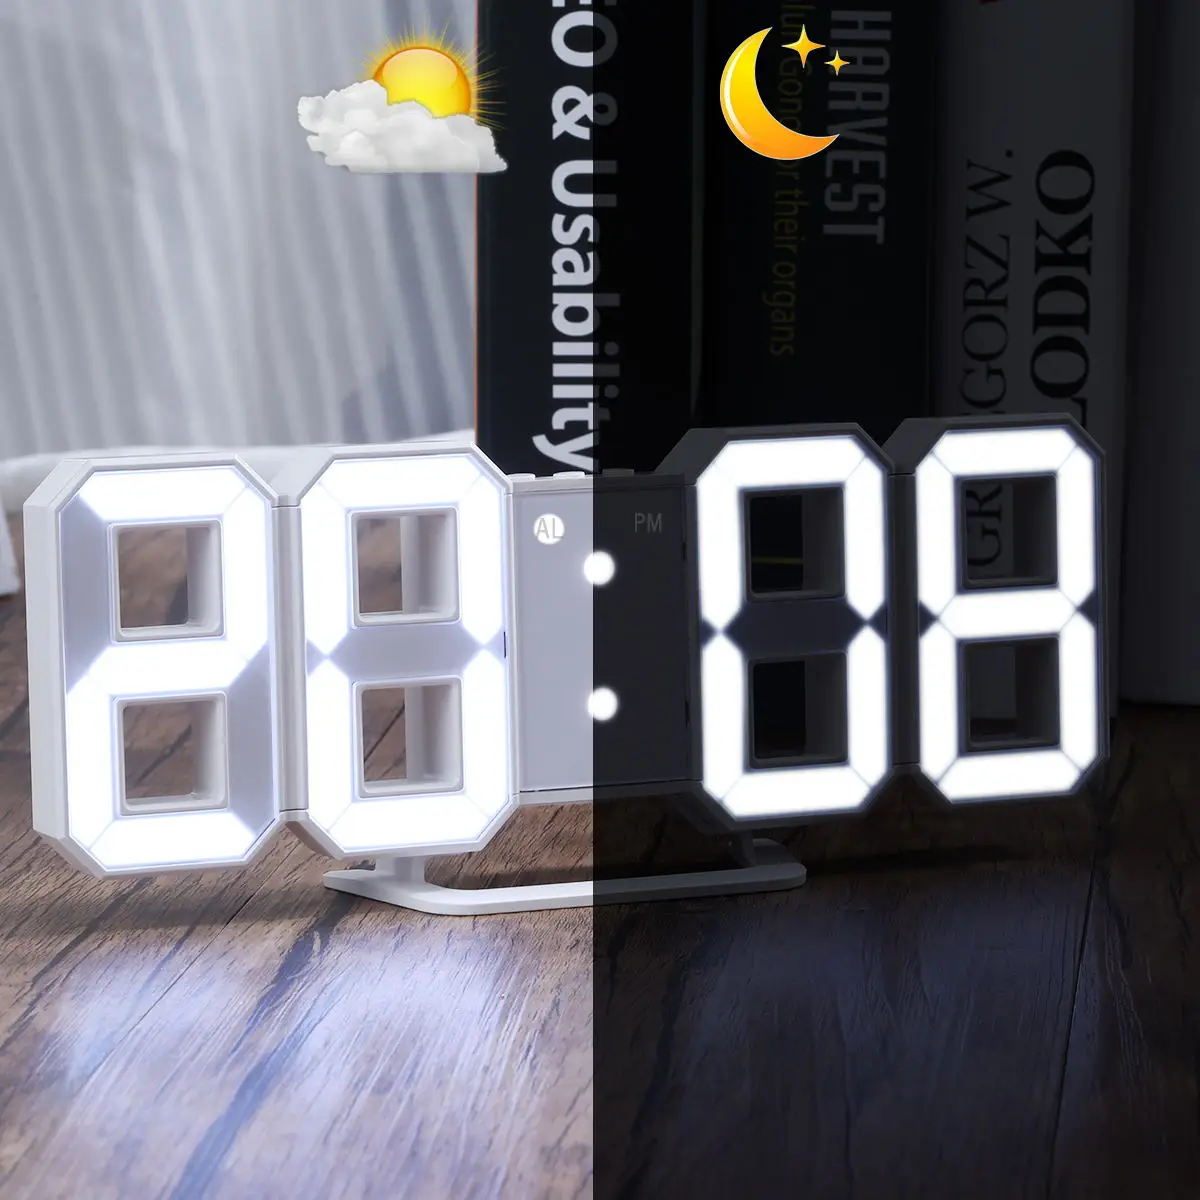 Цифровой большой 3D Будильник Белый светодиодный дисплей цифровые цифры настенные часы с 3 уровнями яркости Будильник Повтор часы USB кабель